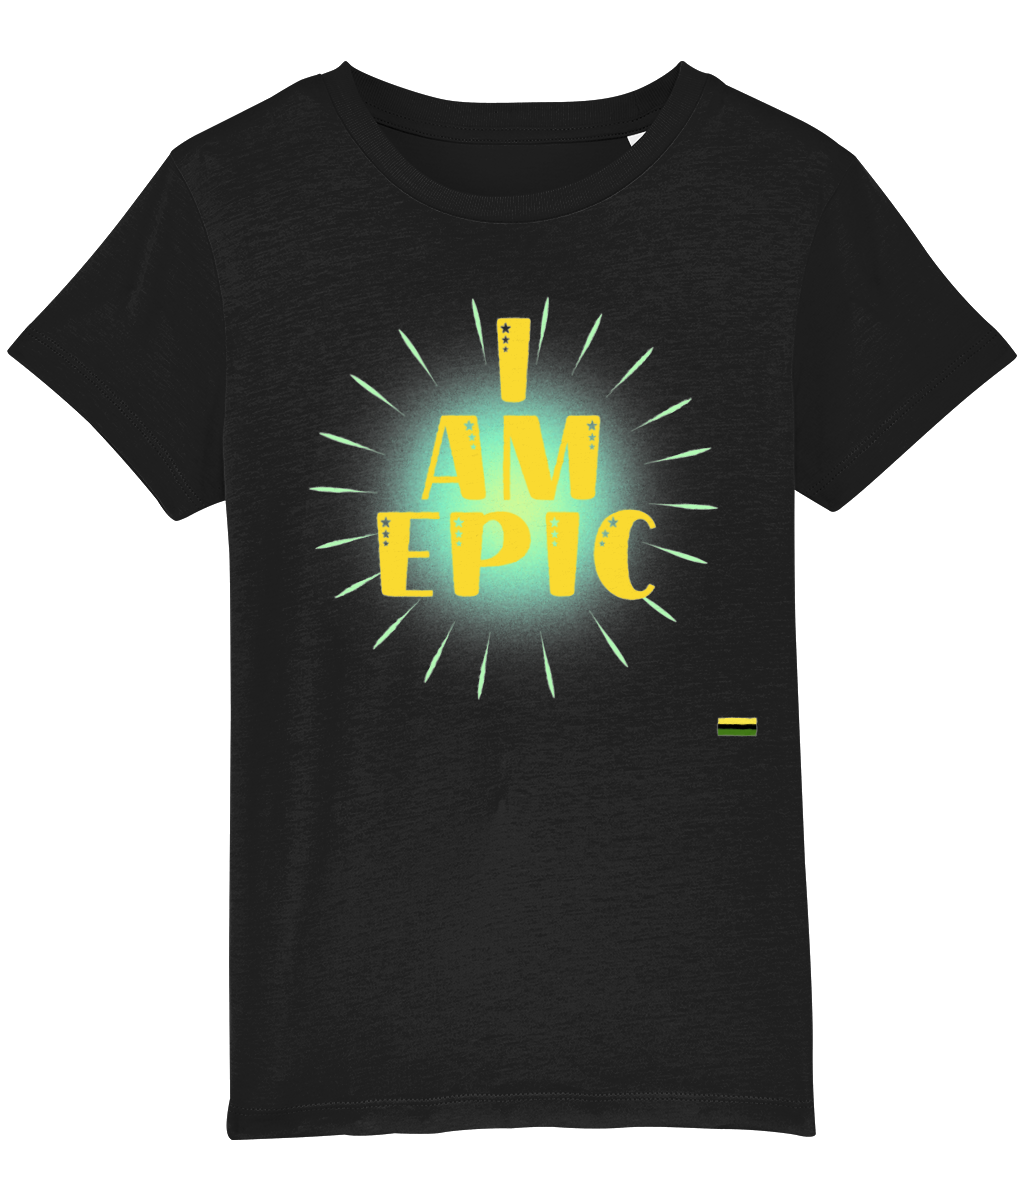 I AM EPIC Unisex Kids T Shirt